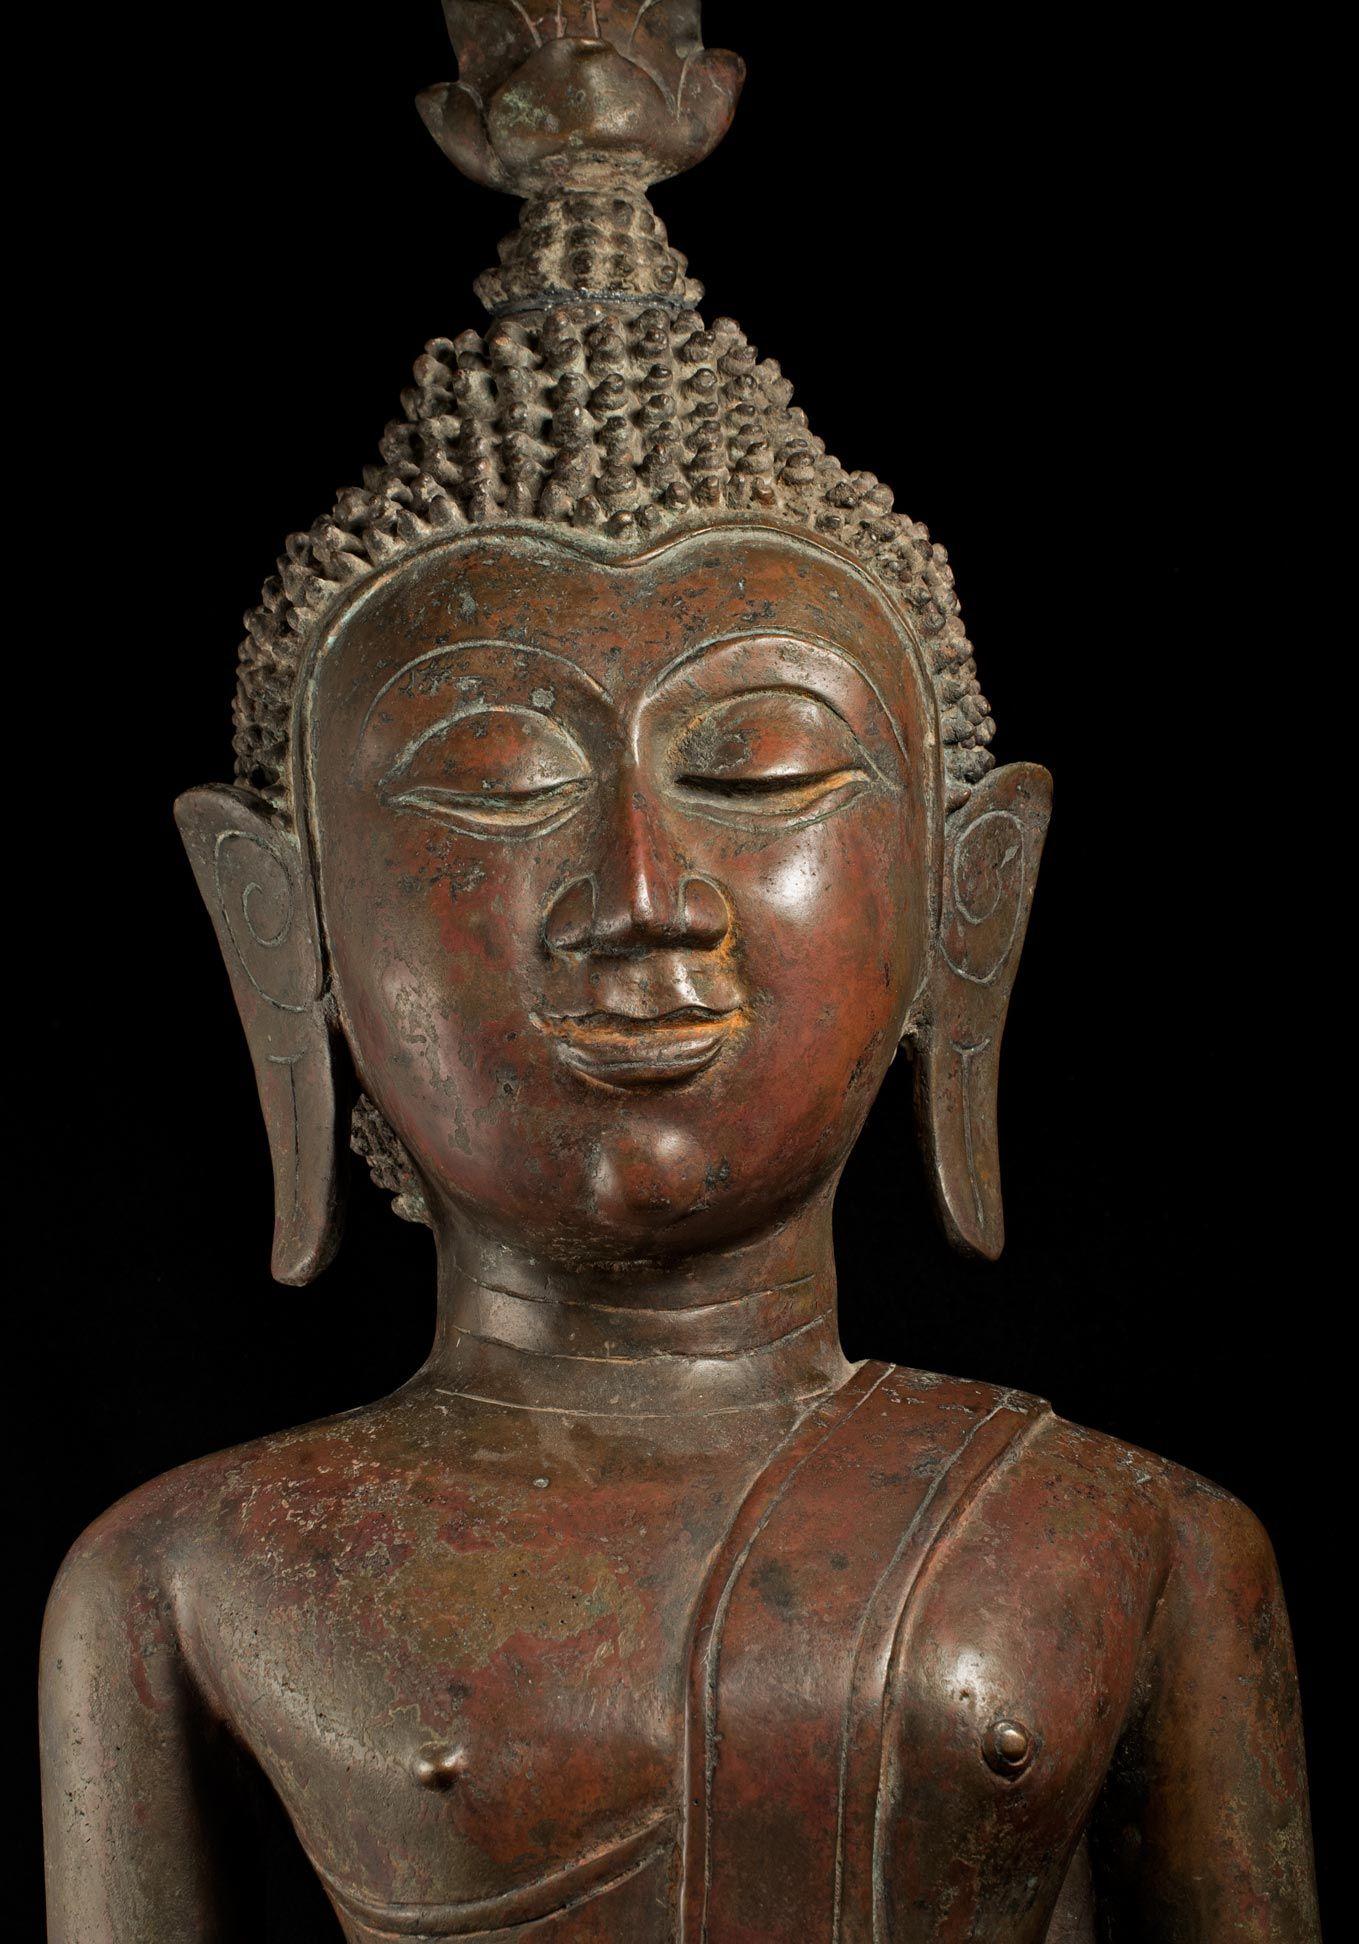 Grand royaume de Bouddha en bronze du 18/19e siècle de Nan dans le nord-est de la Thaïlande - 8961 8